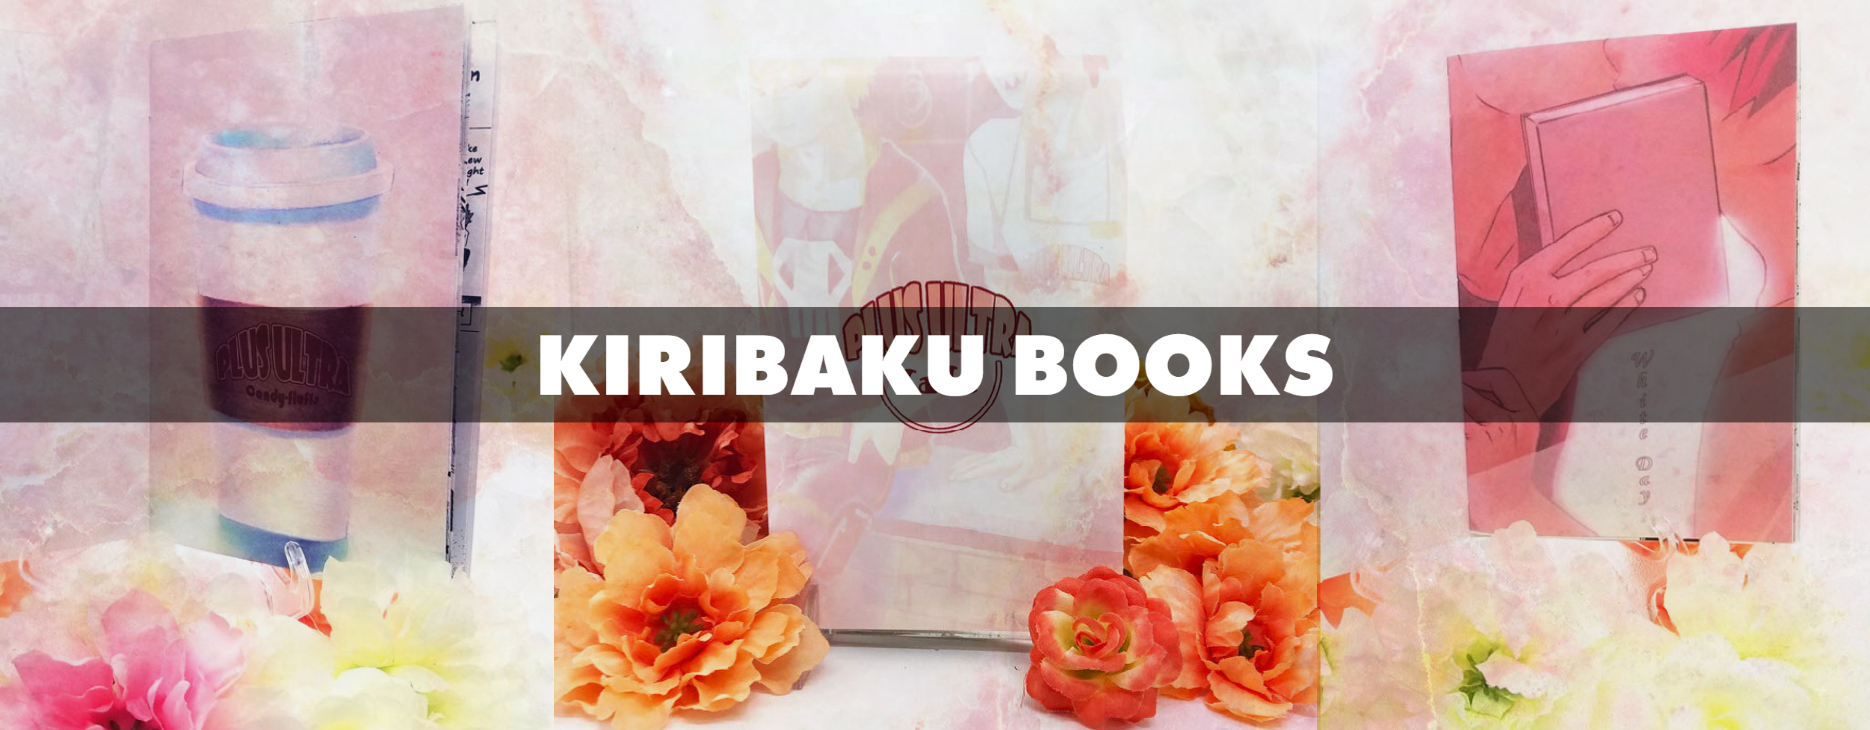 Kiribaku Books